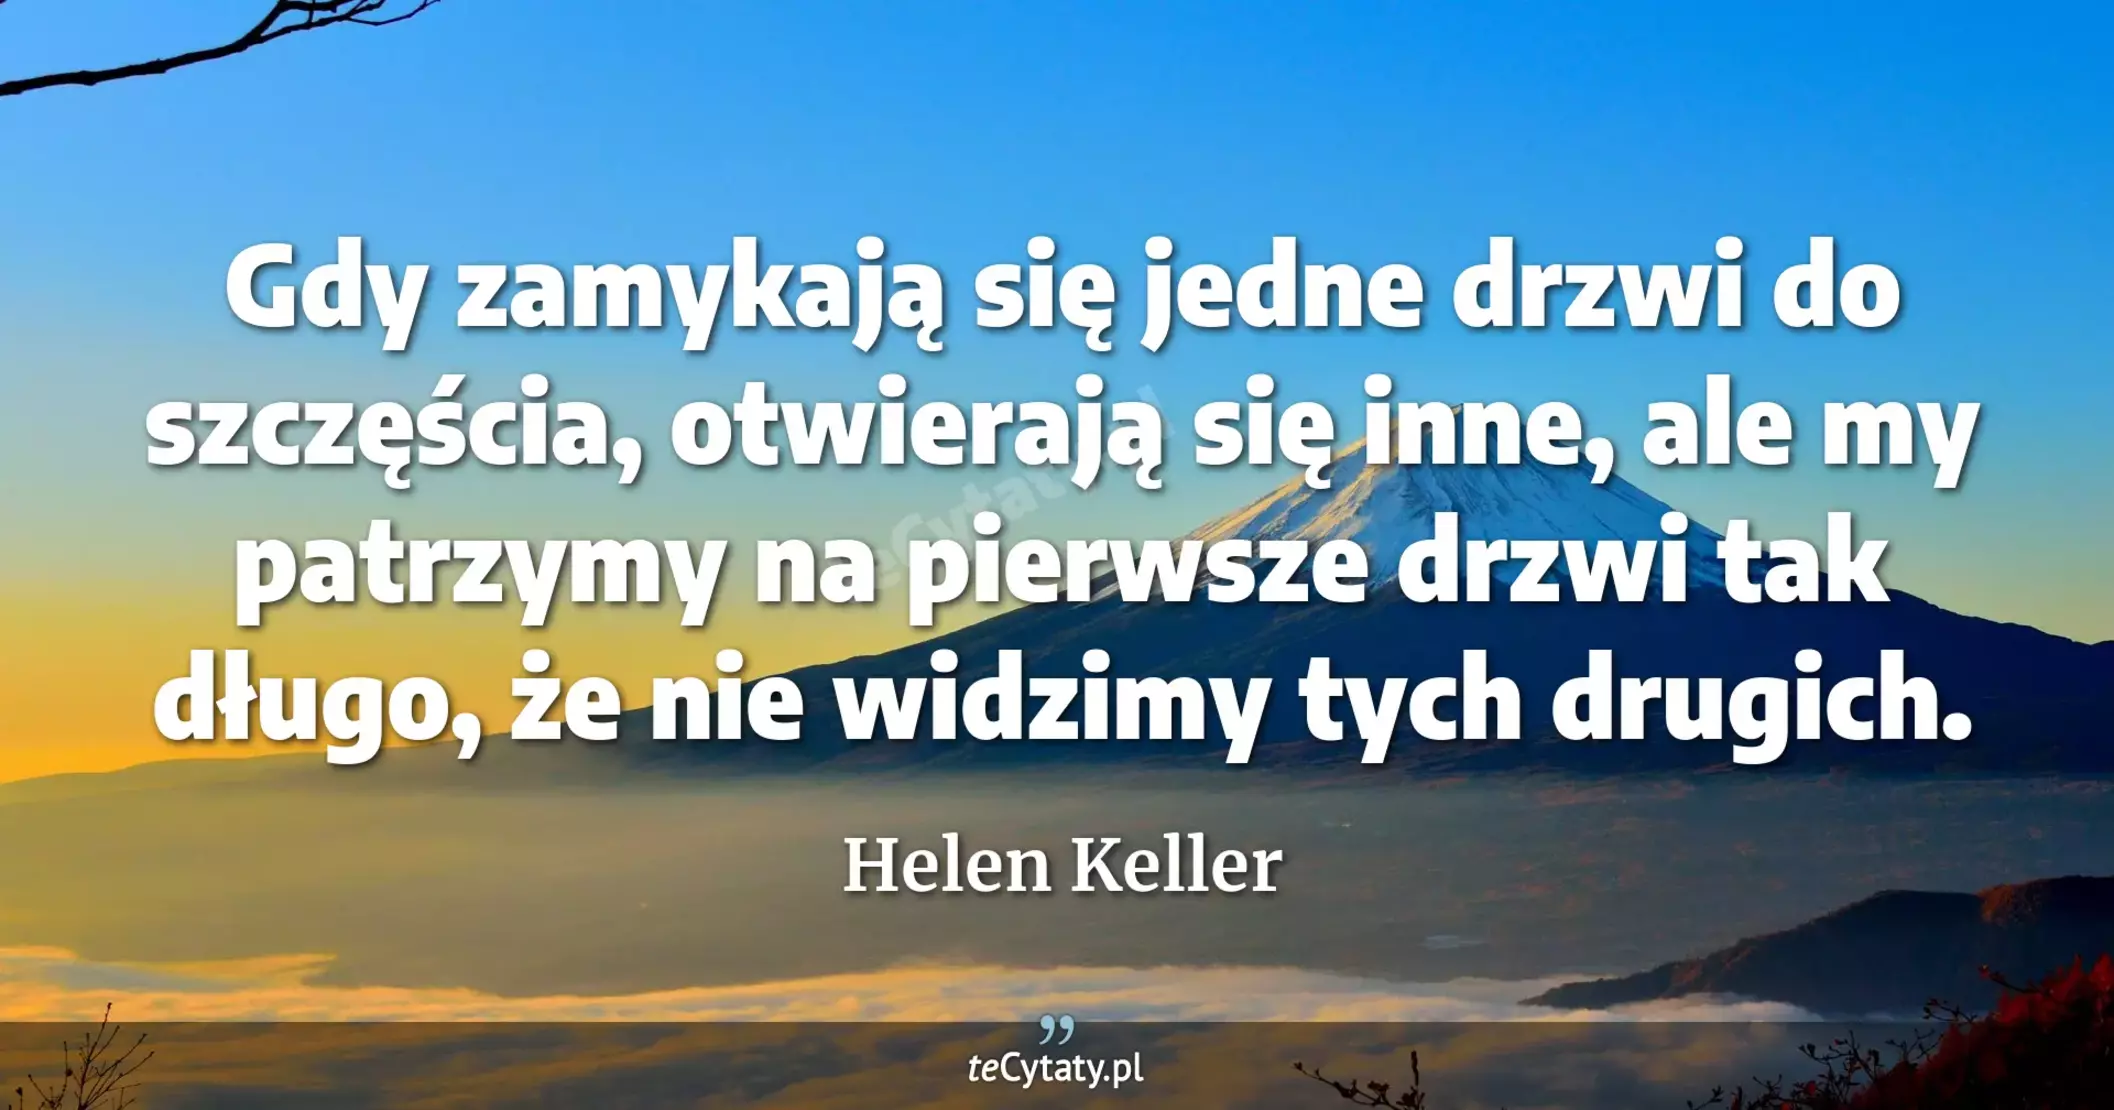 Gdy zamykają się jedne drzwi do szczęścia, otwierają się inne, ale my patrzymy na pierwsze drzwi tak długo, że nie widzimy tych drugich. - Helen Keller